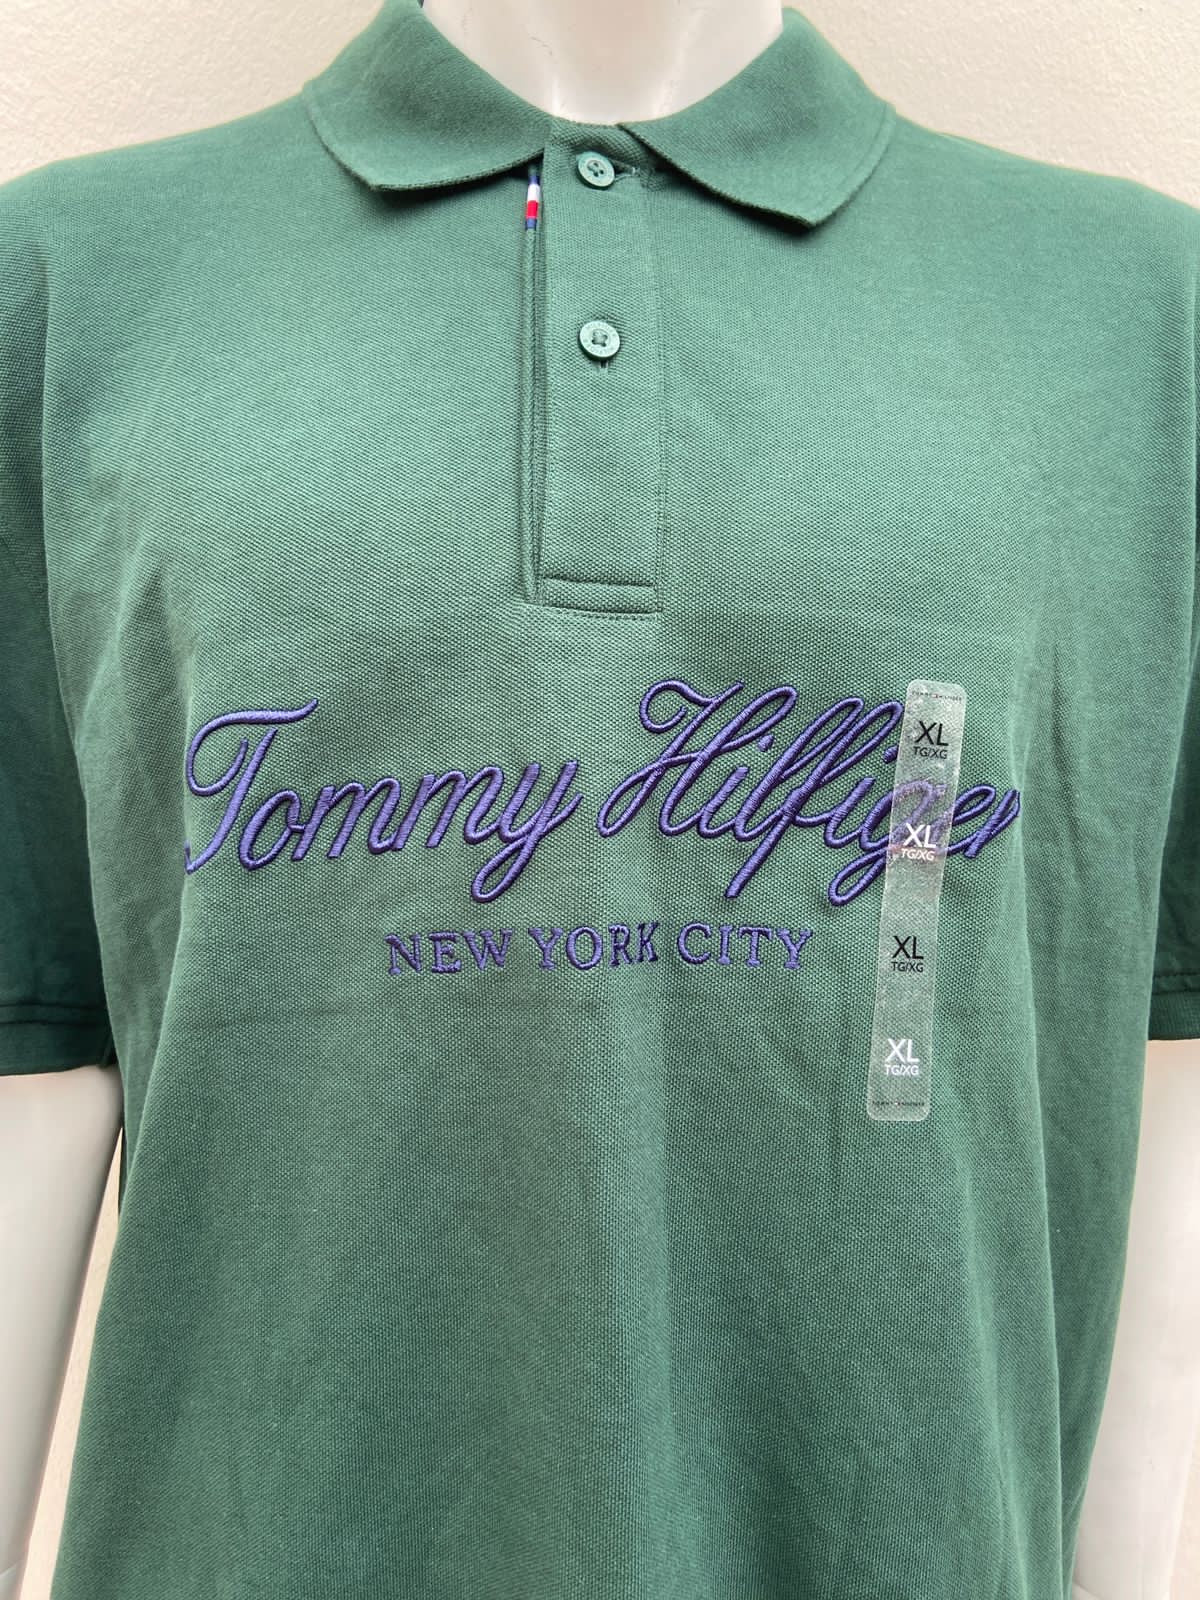 Polocher Tommy Hilfiger verde oscuro con botones en el centro logo(Tommy Hilfiger New York City)letras color azul.